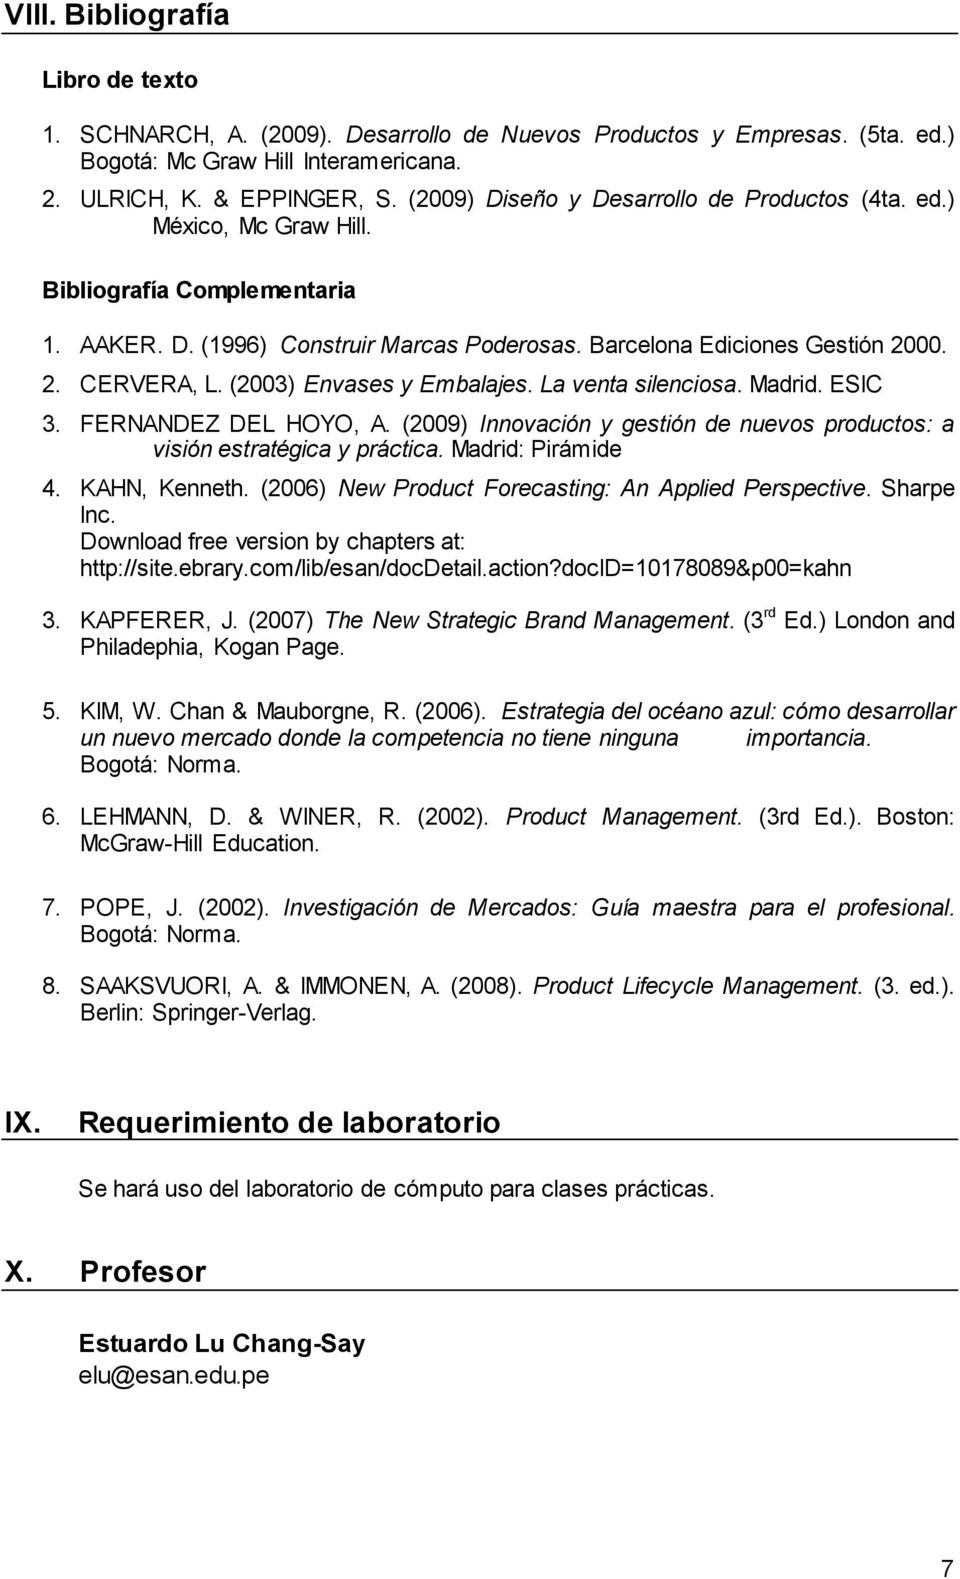 (2003) Envases y Embalajes. La venta silenciosa. Madrid. ESIC 3. FERNANDEZ DEL HOYO, A. (2009) Innovación y gestión de nuevos productos: a visión estratégica y práctica. Madrid: Pirámide 4.